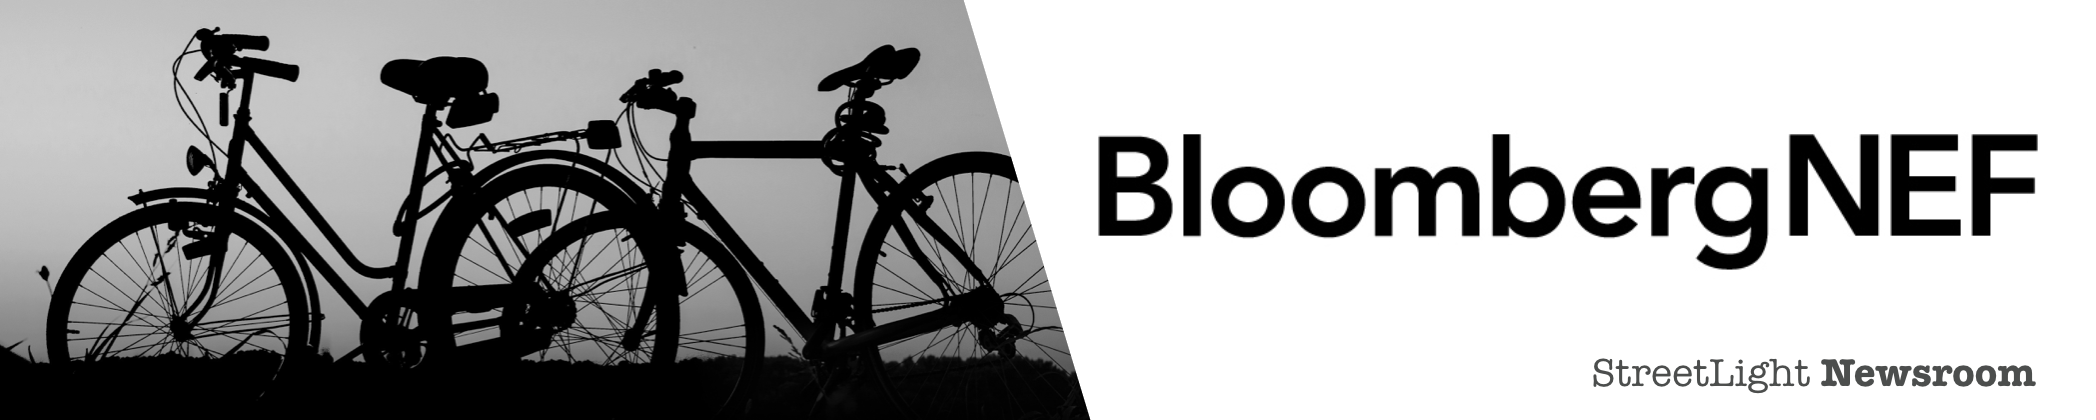 Bloomberg bike sharing header